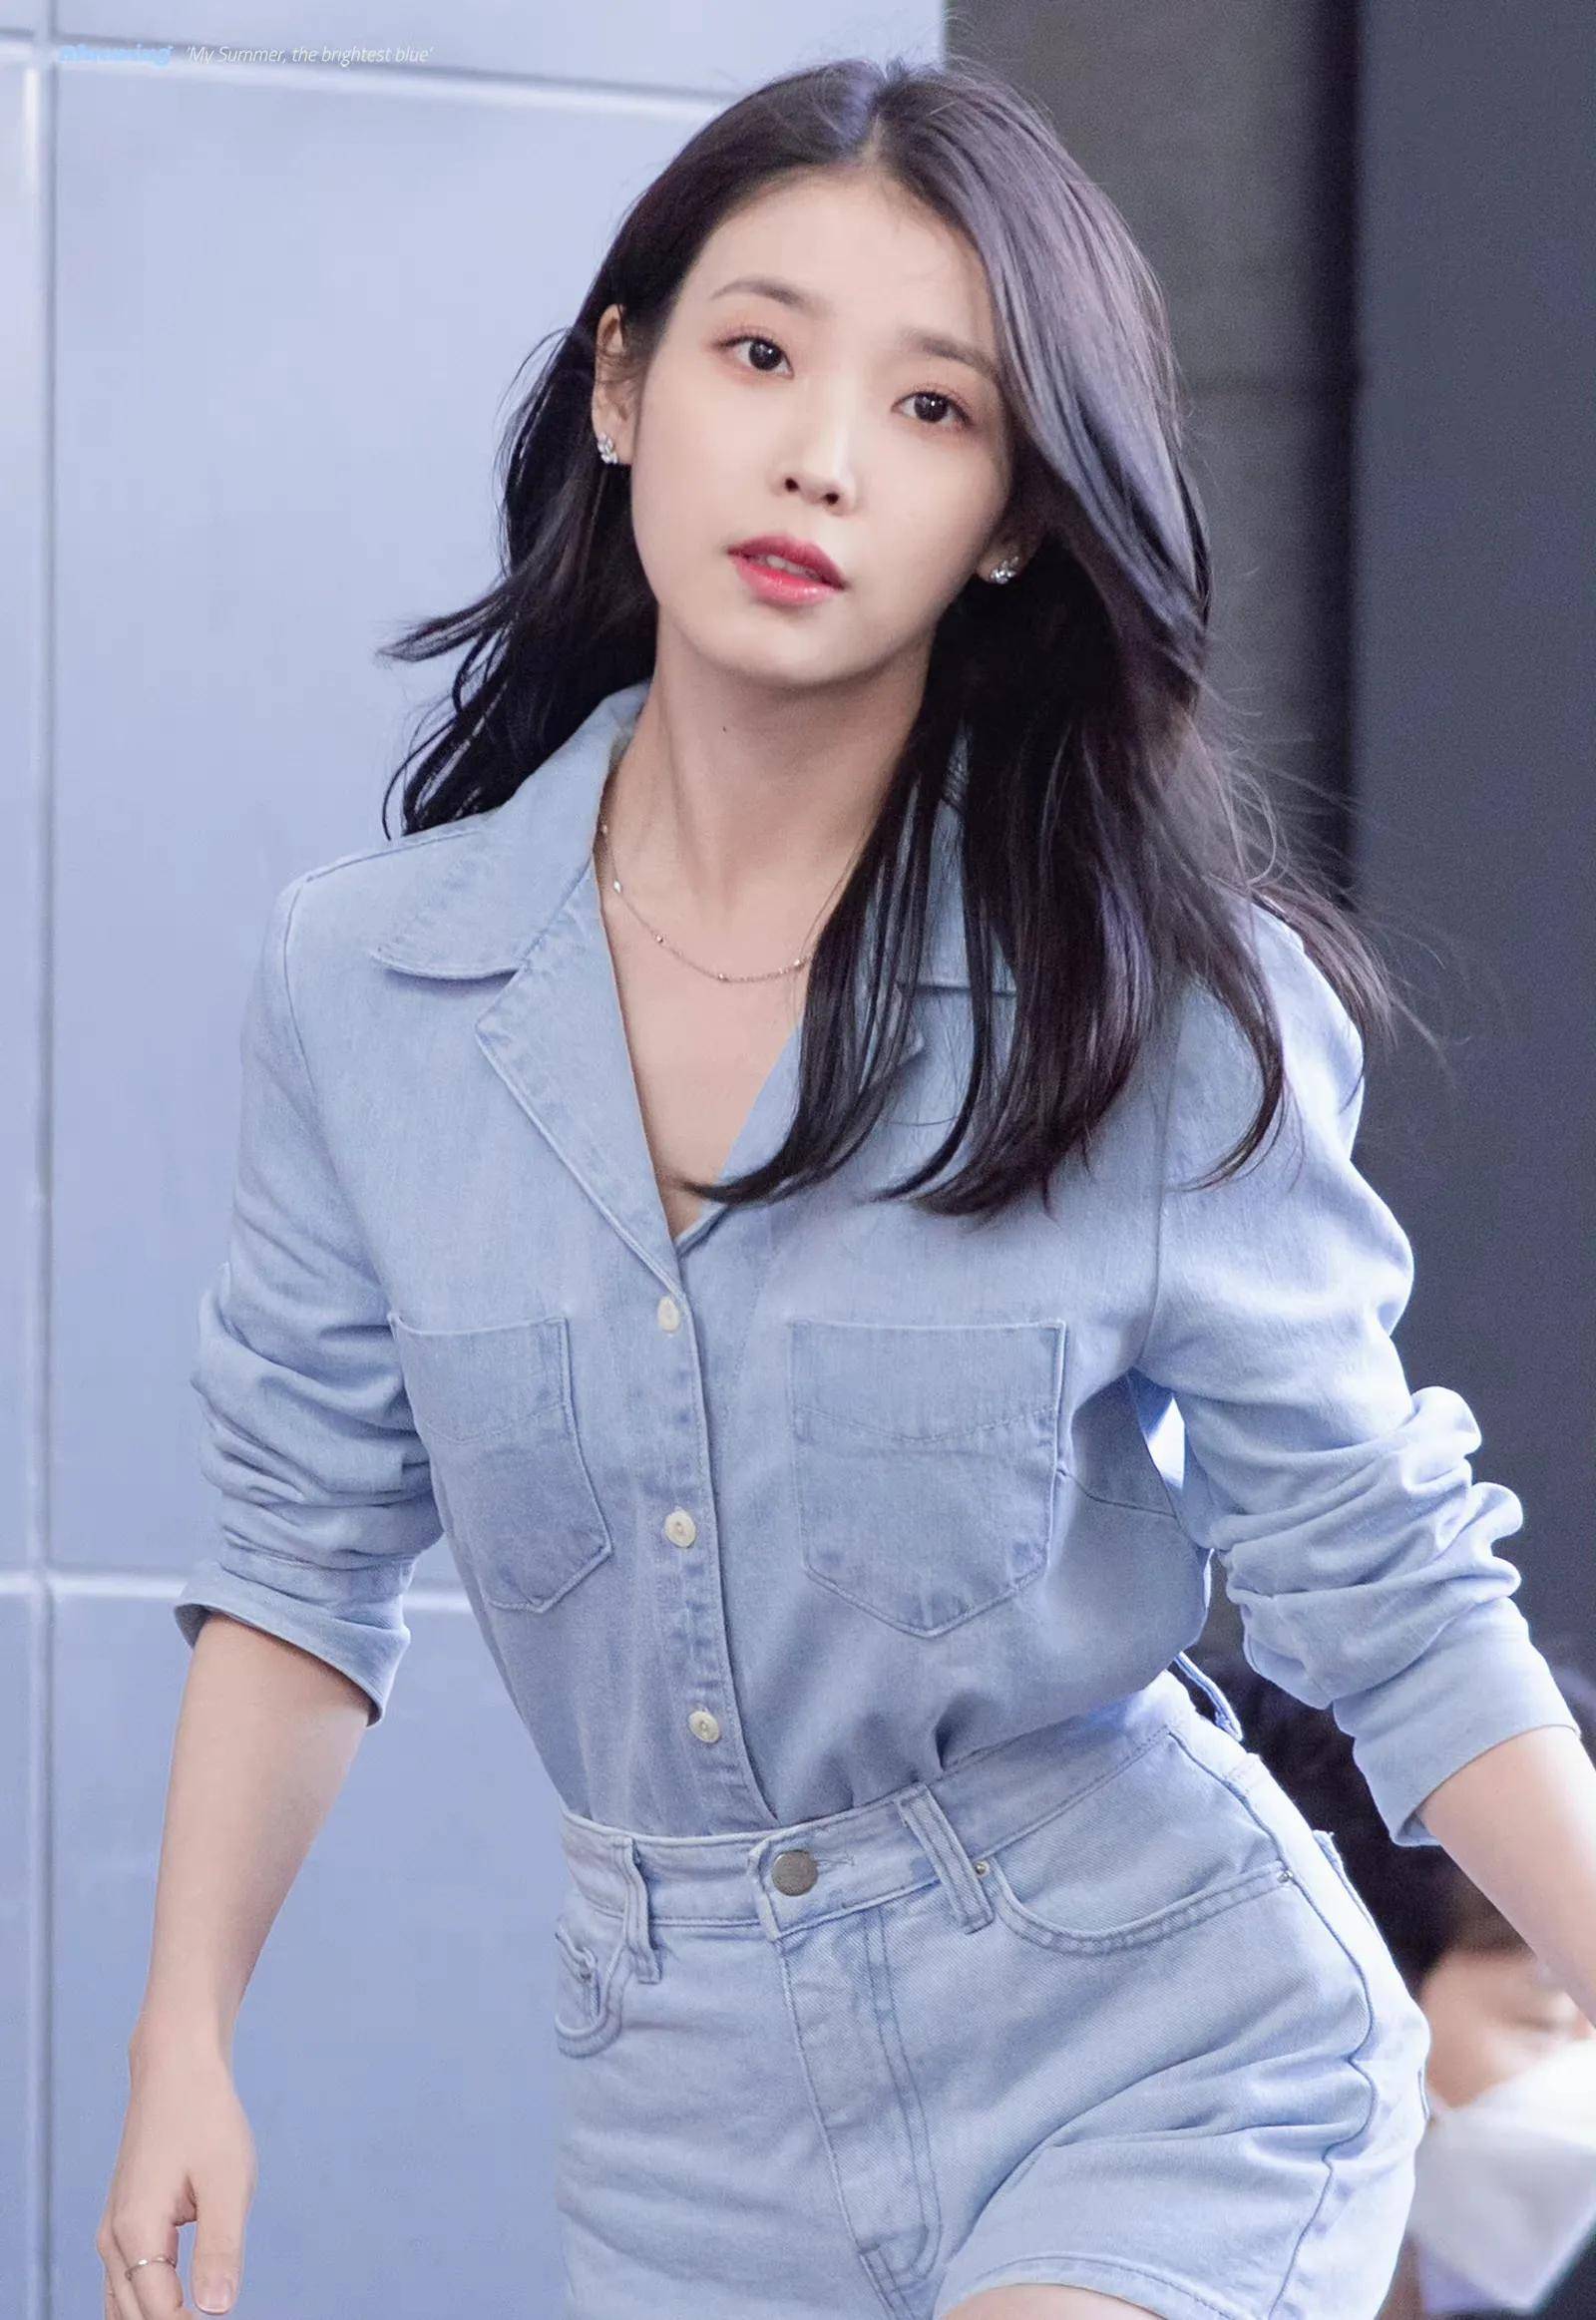 iu李知恩穿着蓝色牛仔衬衫搭配牛仔短裤,简约时尚的搭配,展现出她甜美